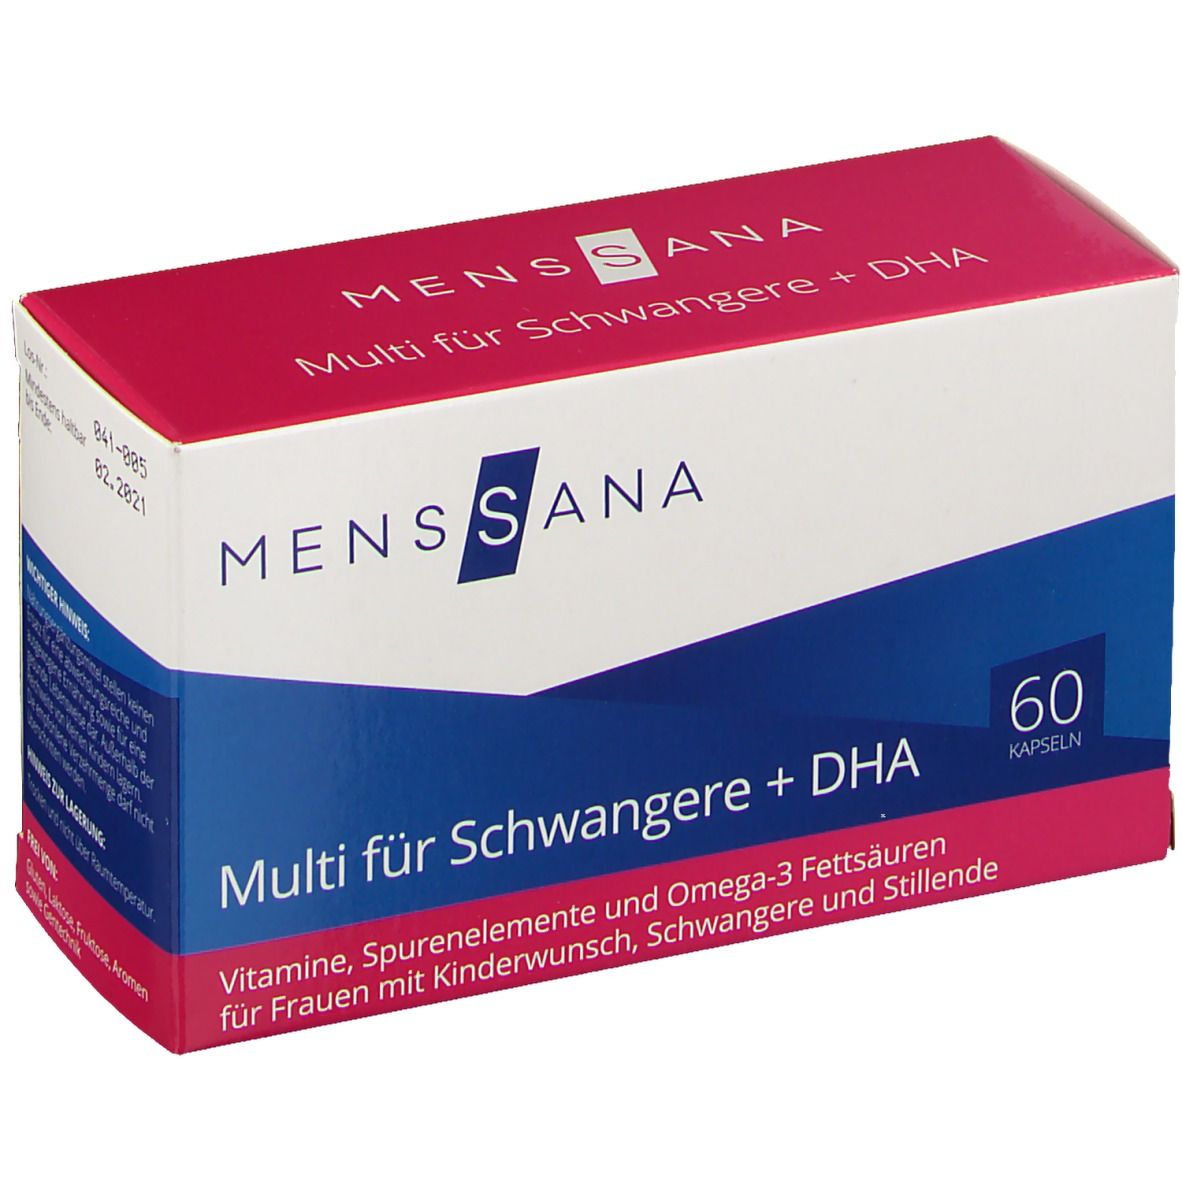 MensSana Multi für Schwangere + DHA